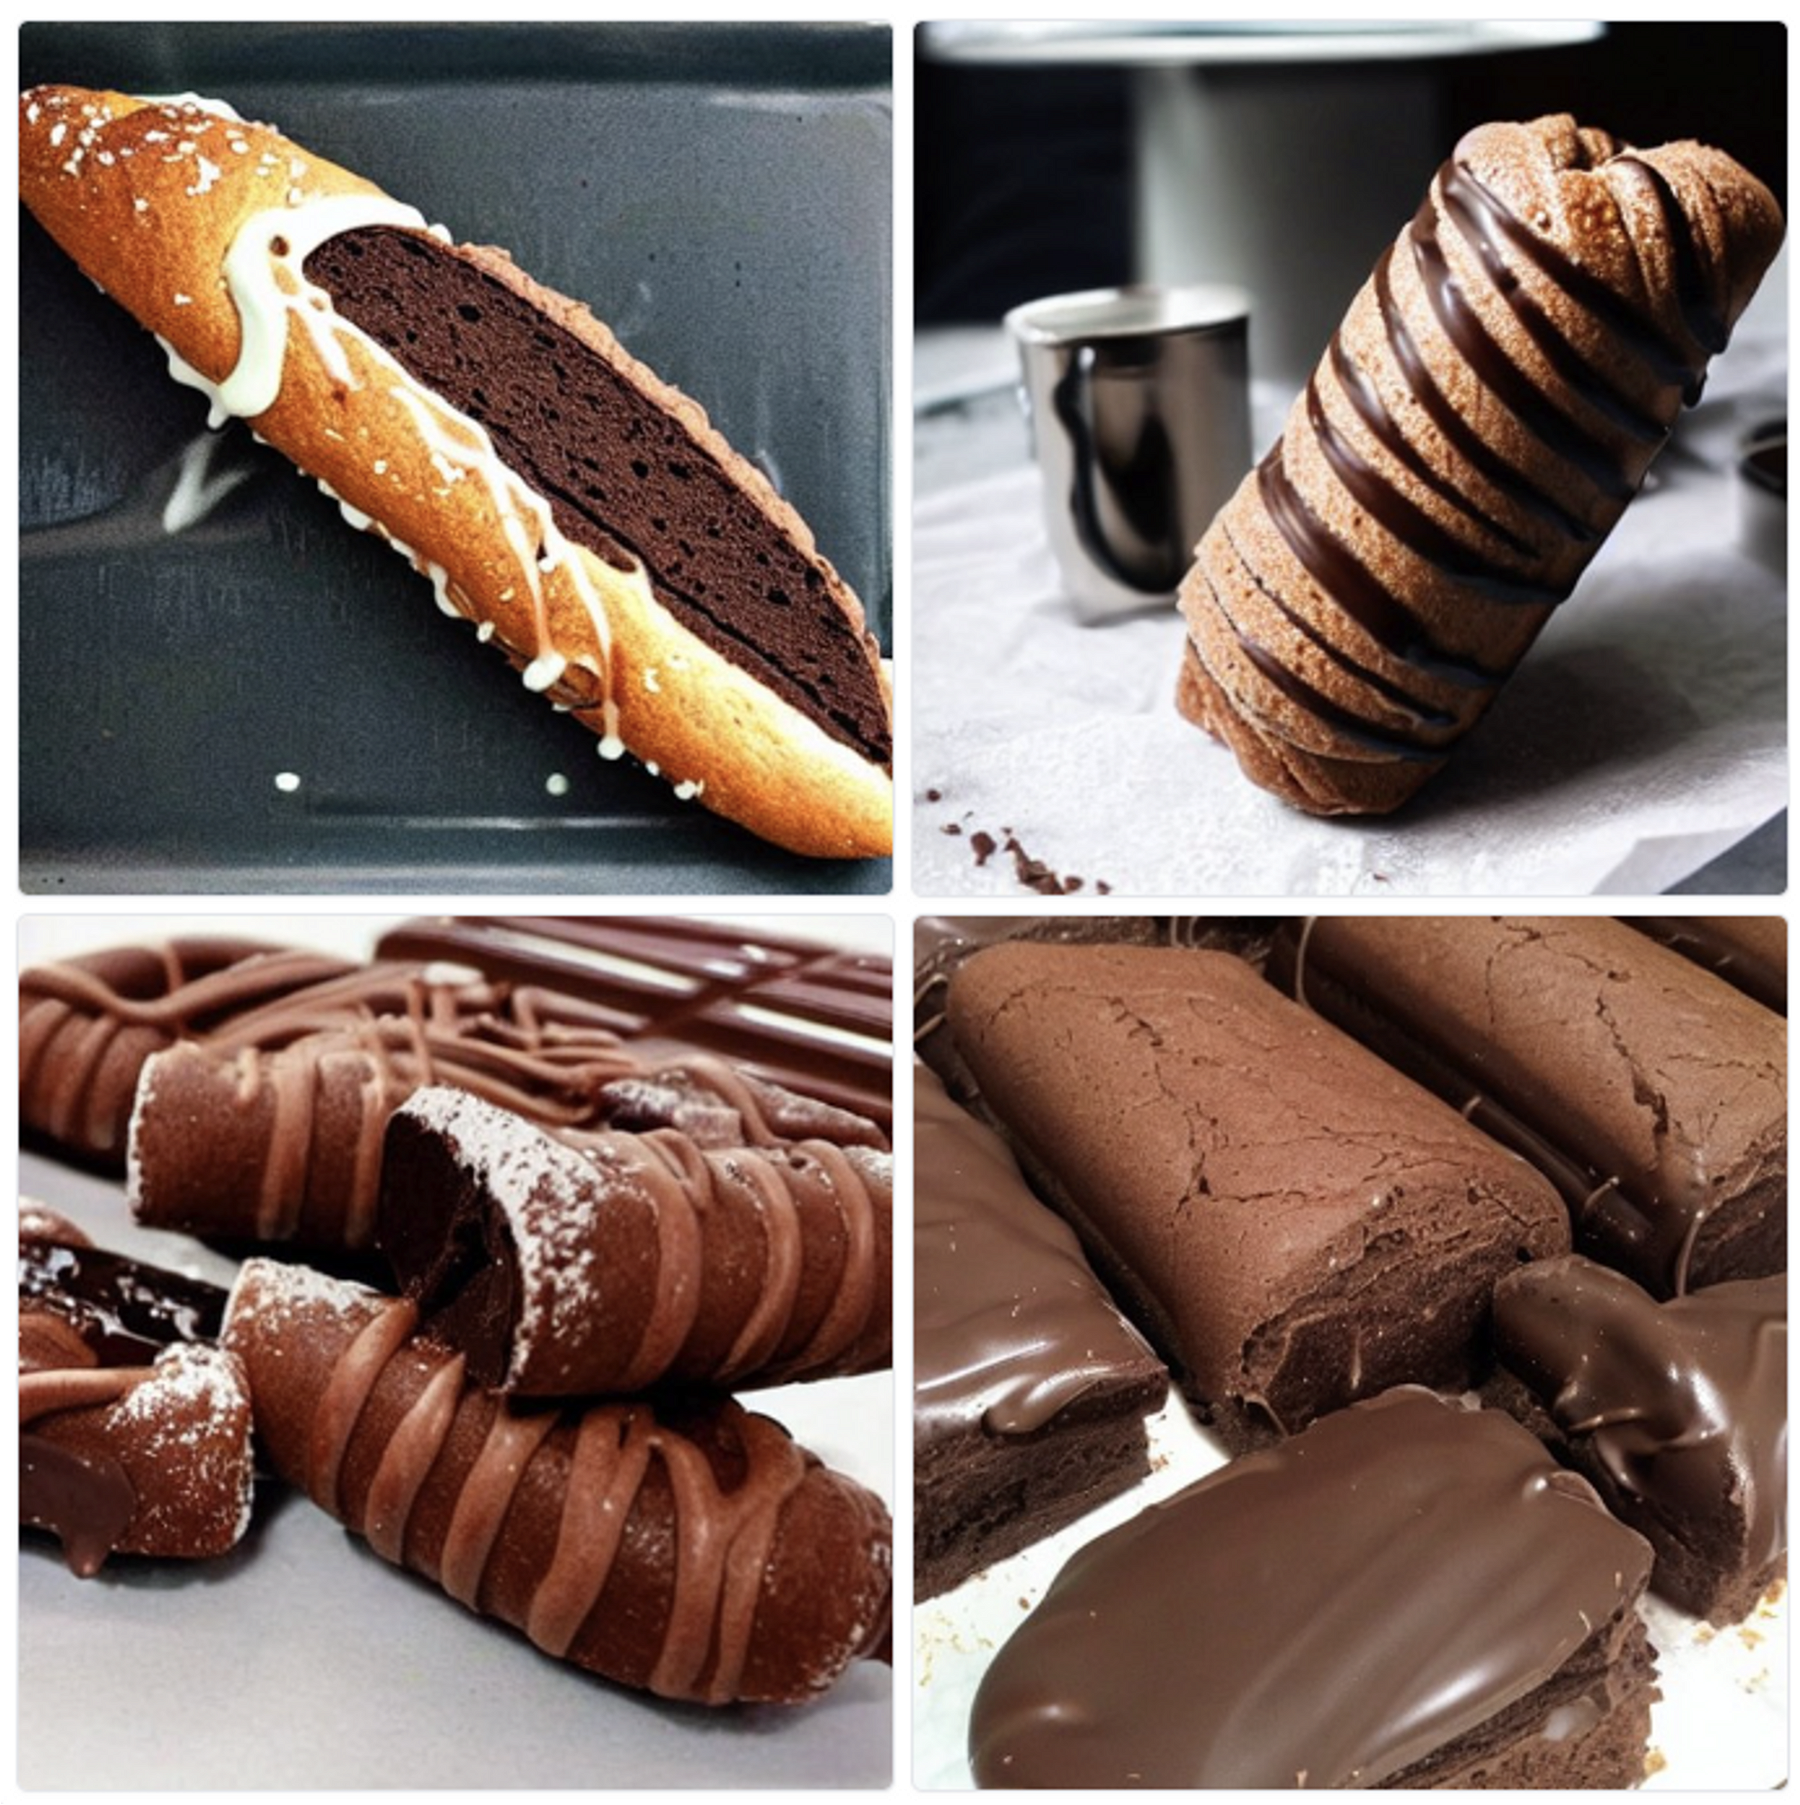 Des “Chocolatines” dessinées par Stable Diffusion